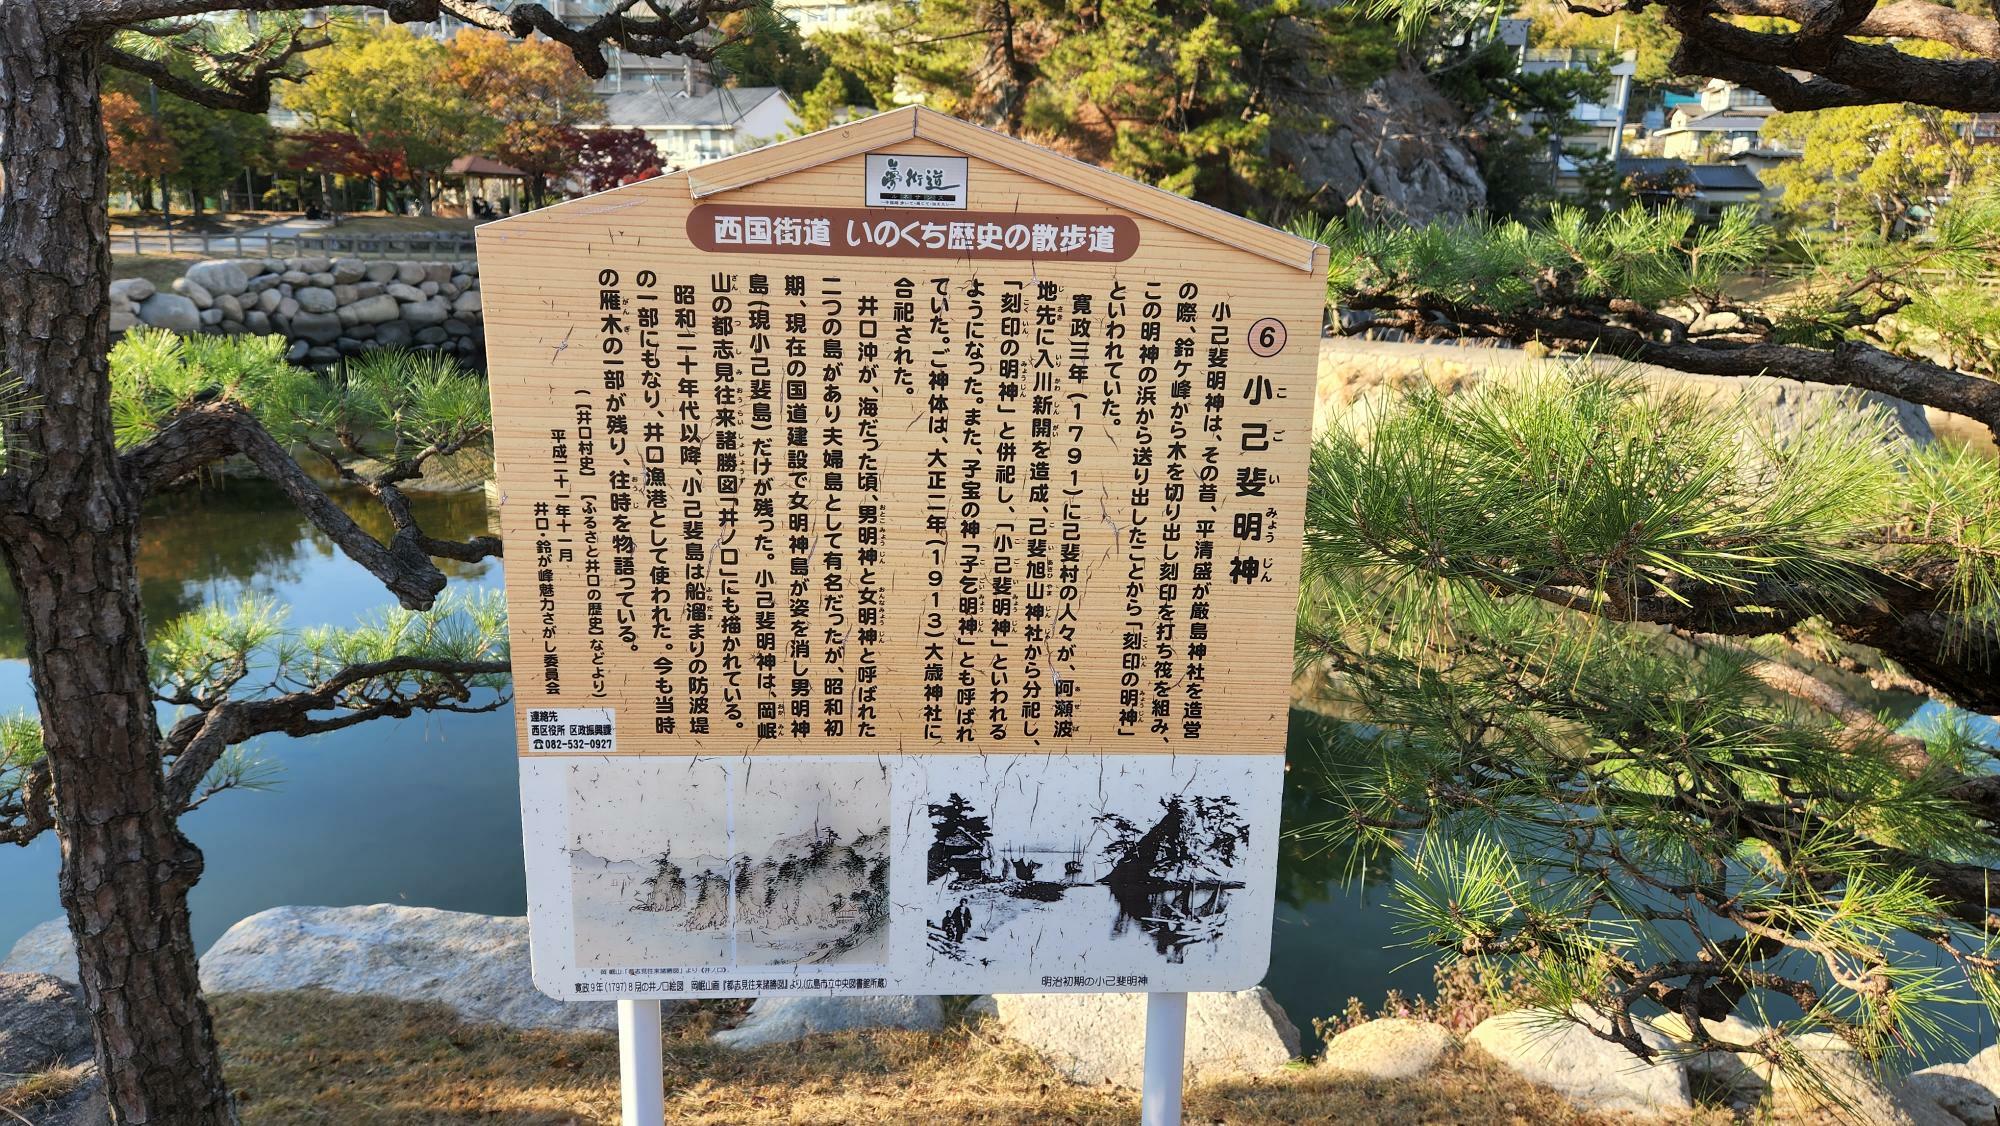 小さな鳥居は「小己斐明神」という神社で、平安時代に平清盛が造営した嚴島神社のために木材を供給していた場所だそう。木材は鈴ヶ峰地区から切り出され、刻印された後、ここから嚴島神社へと送られていたとされています。